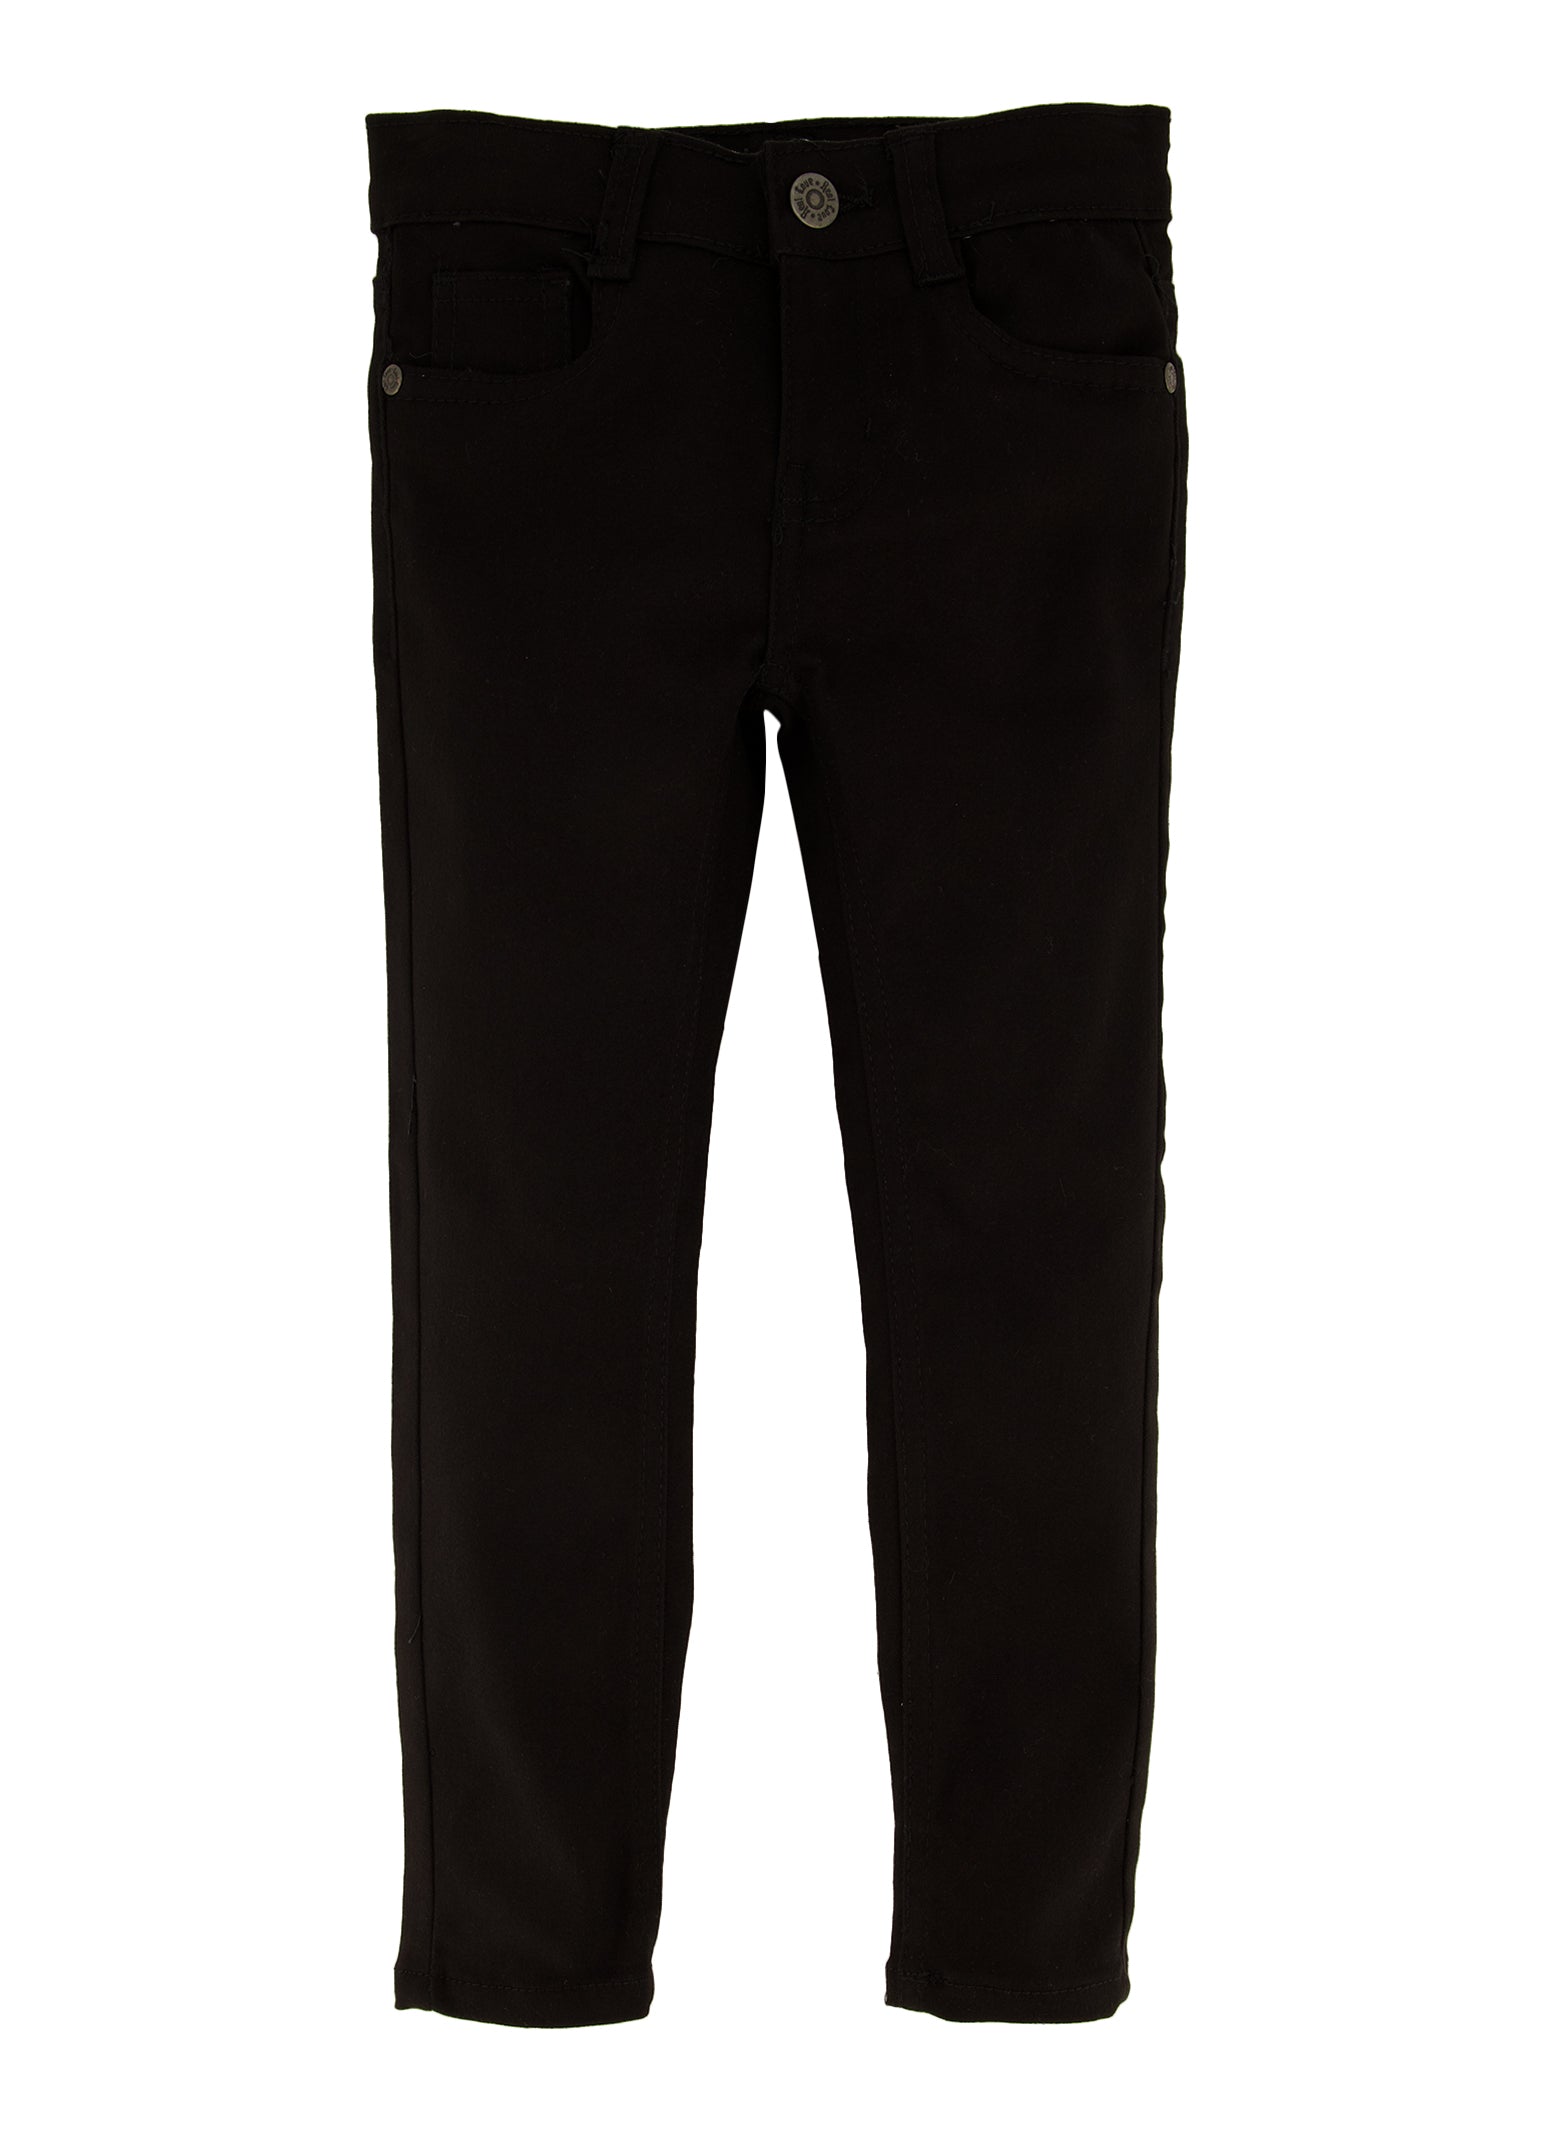 ASOS DESIGN Tall slim suit pants in black | ASOS